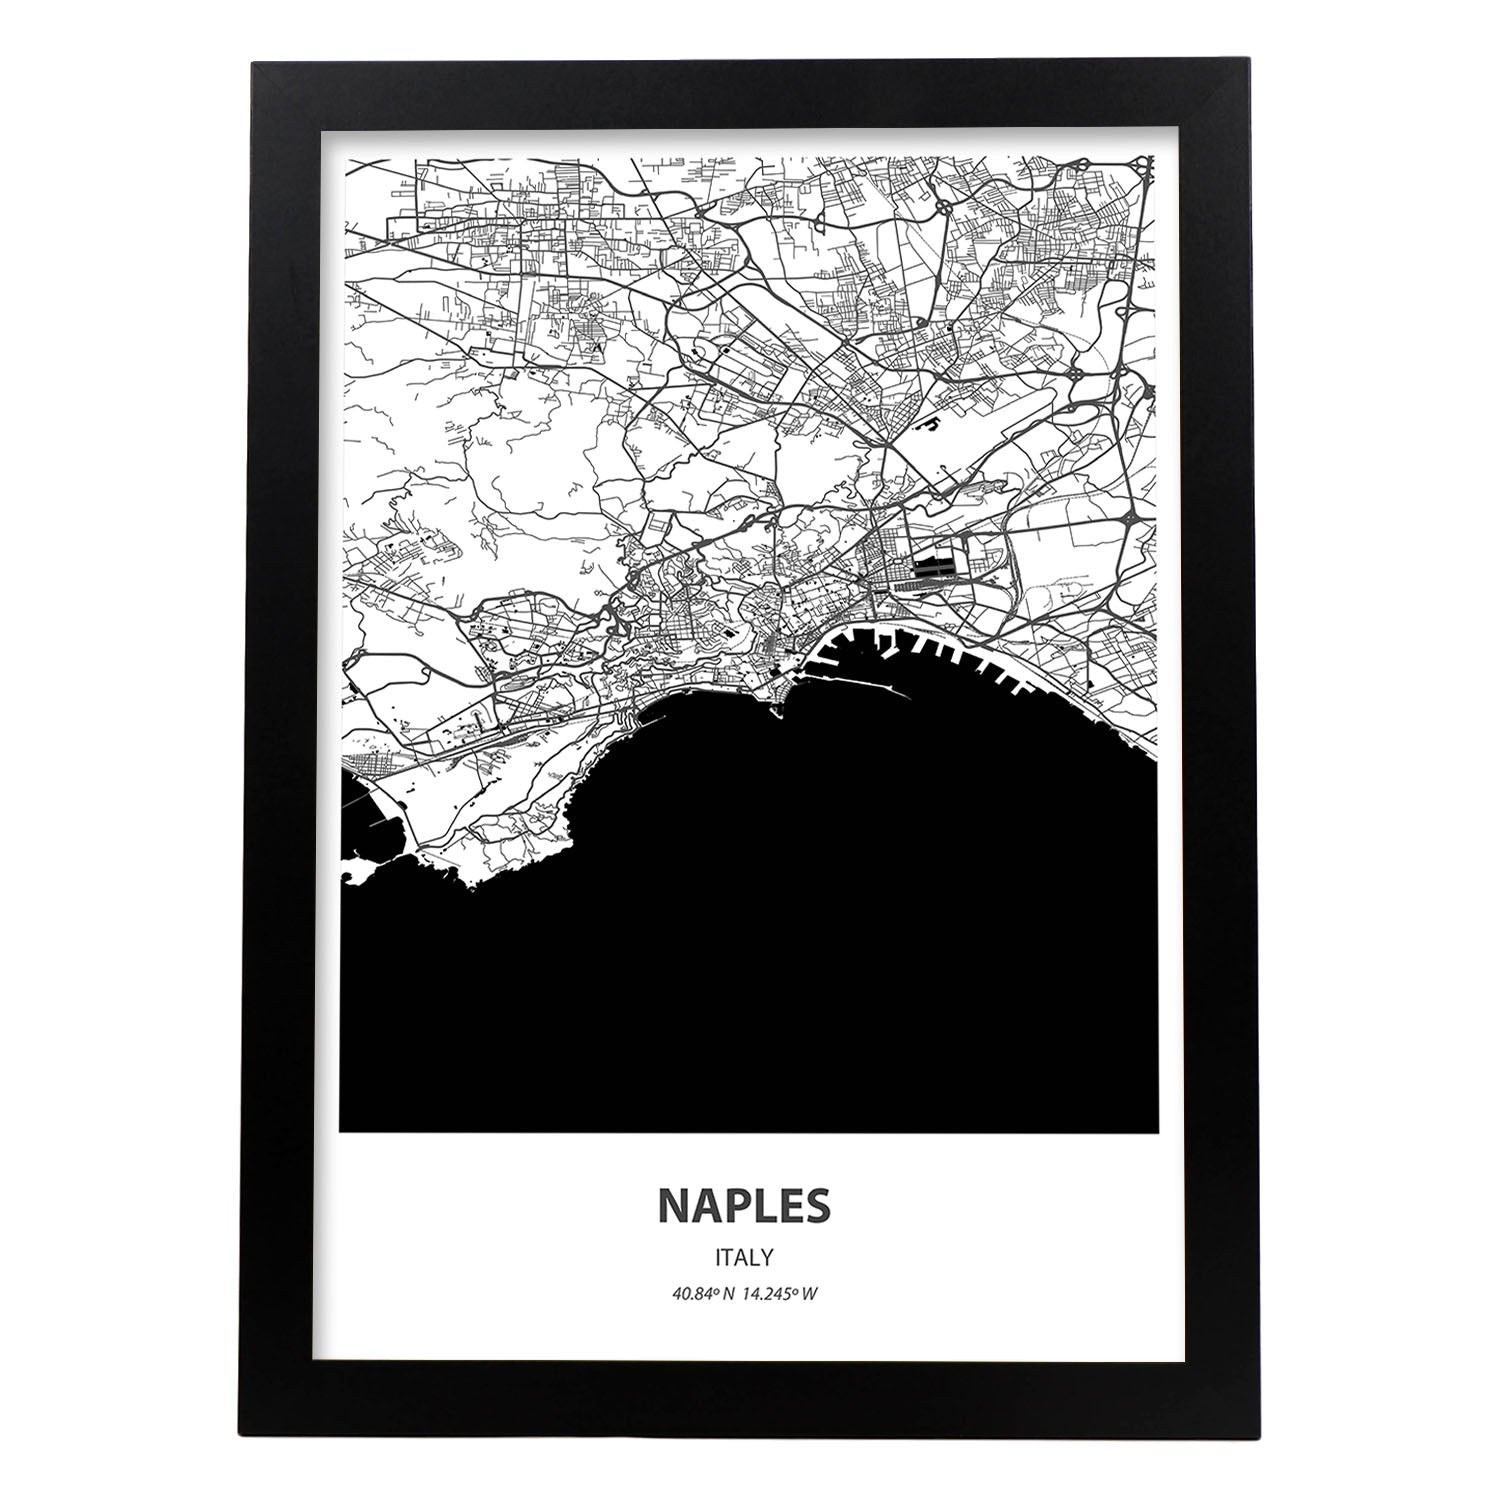 Poster con mapa de Naples - Italia. Láminas de ciudades de Italia con mares y ríos en color negro.-Artwork-Nacnic-A3-Marco Negro-Nacnic Estudio SL